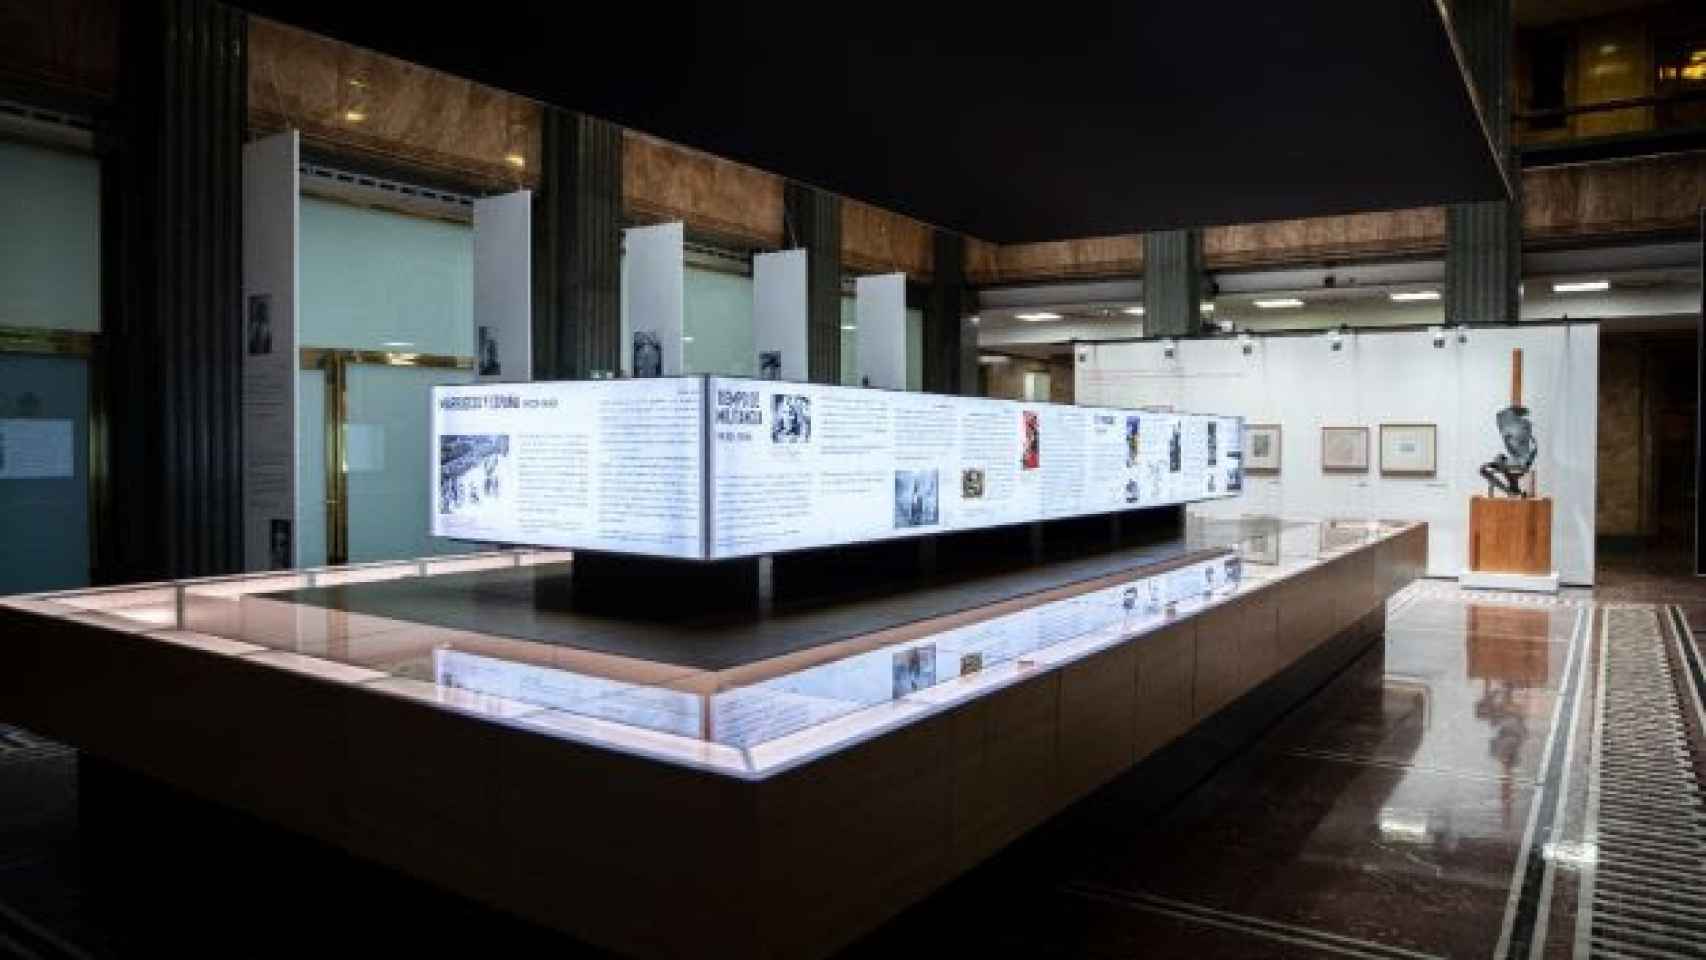 Detalle de una de las salas de la exposición, donde se muestran los libros de Sender, pinturas y otras piezas. Foto: Instituto Cervantes / Miguel Alcalde